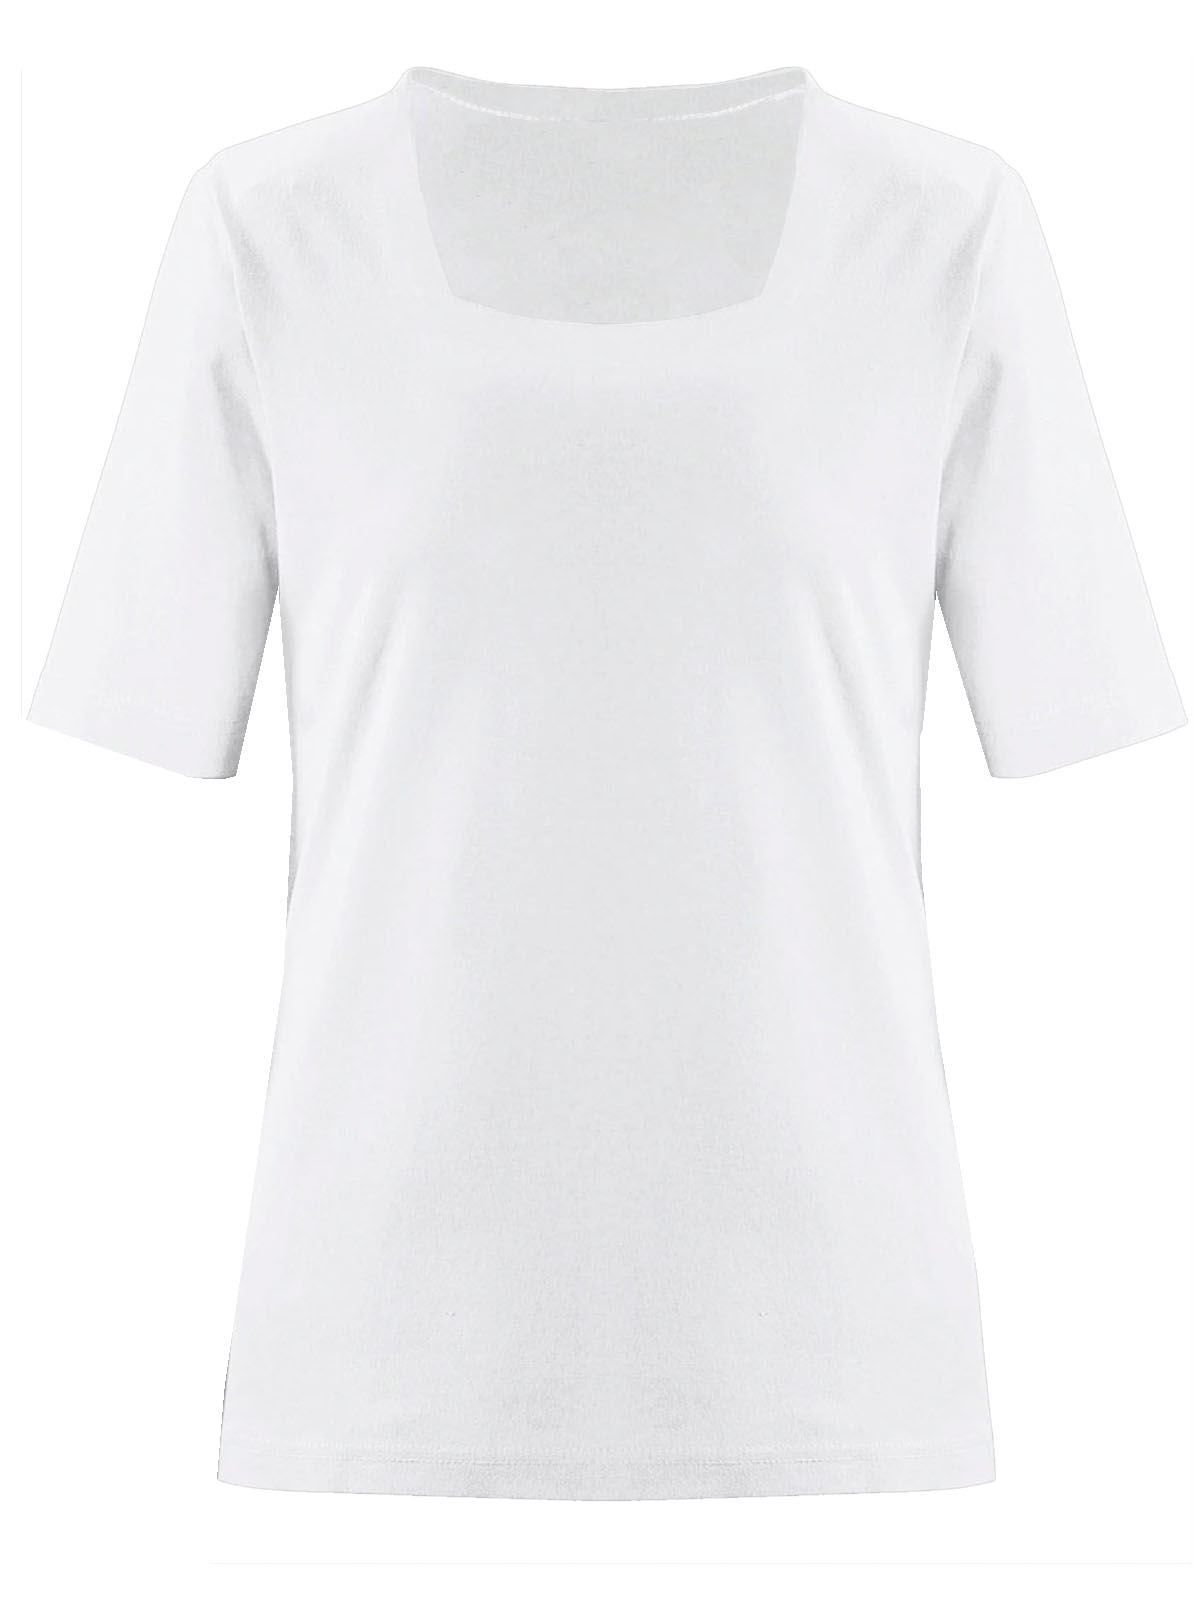 White Square Neck T Shirt